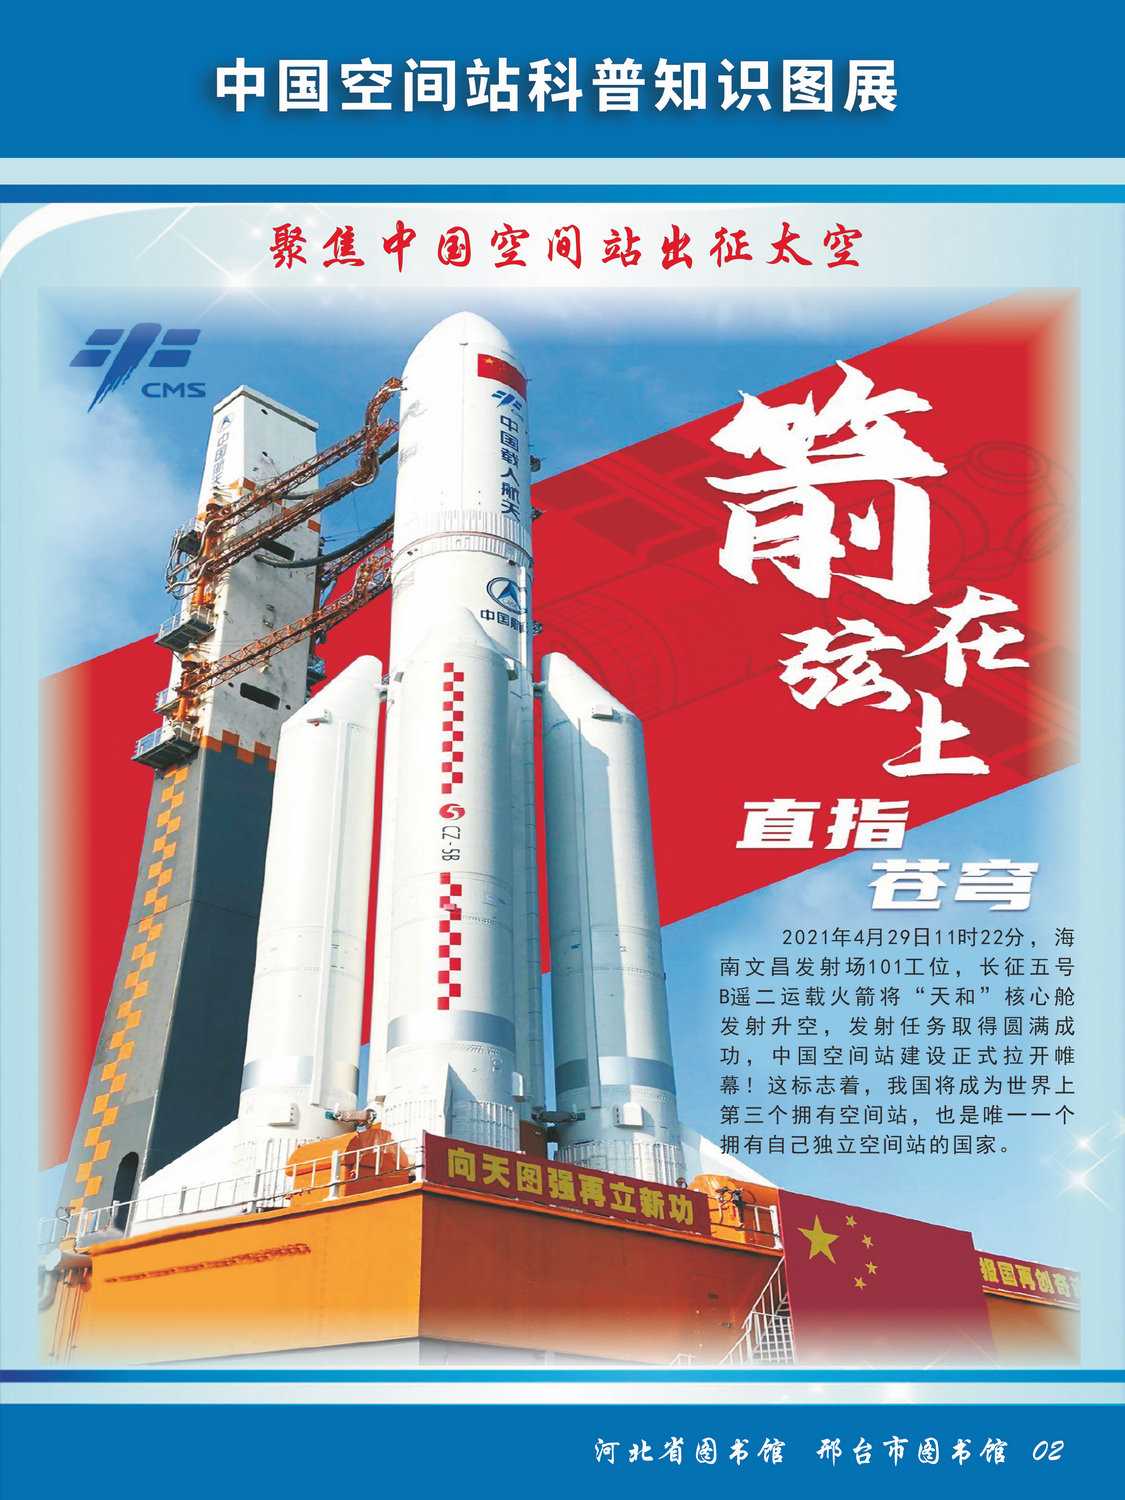 中国空间站科普知识图文展_图2